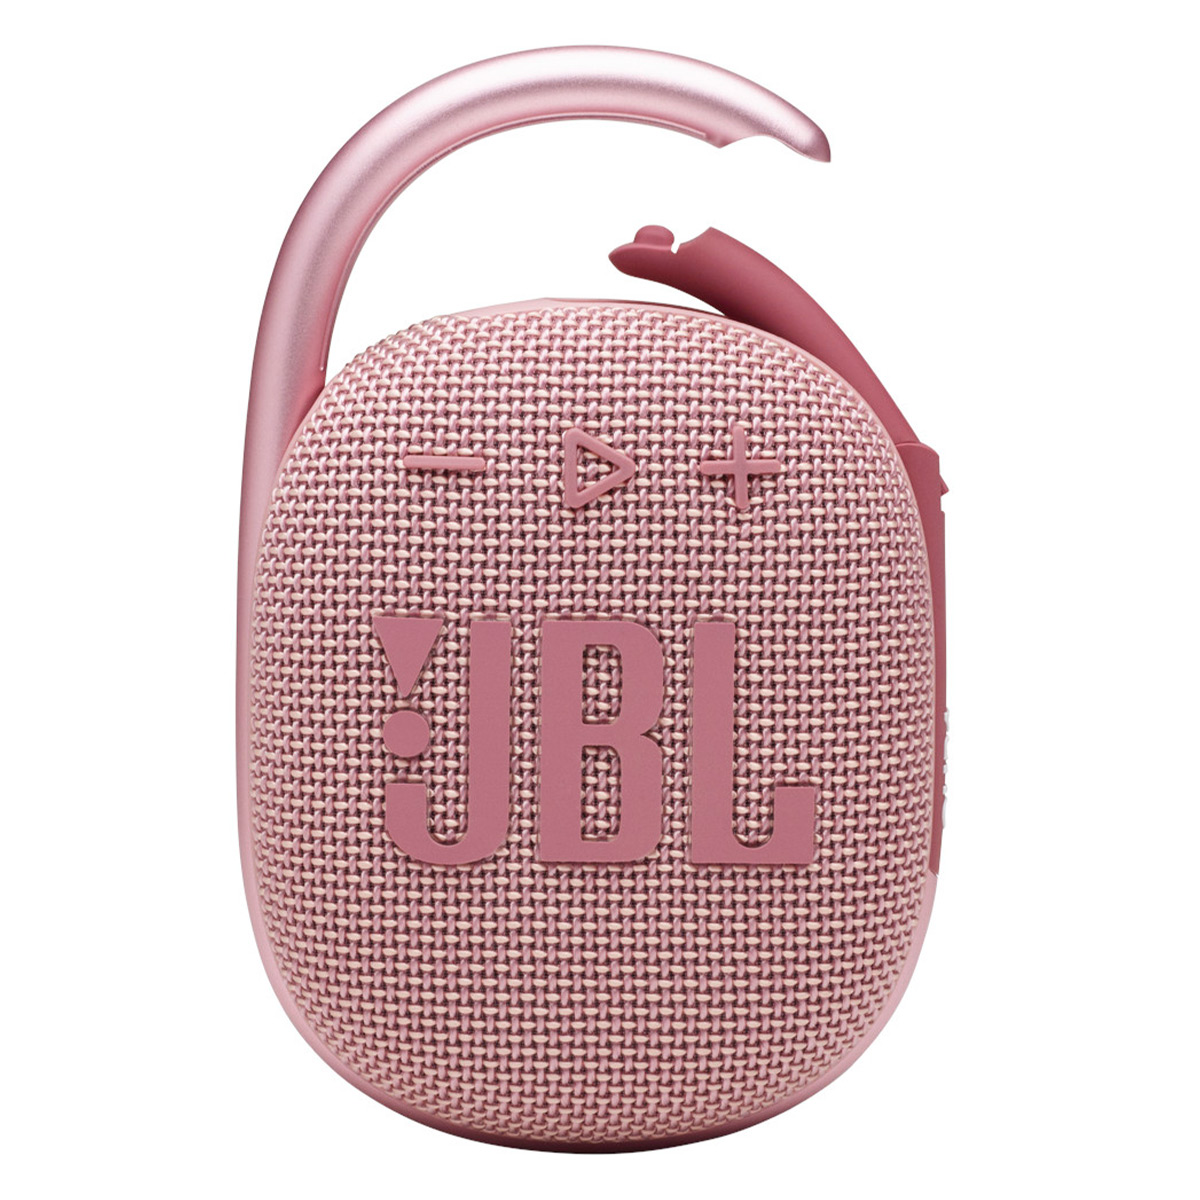 JBL Clip 4 Portable Bluetooth Waterproof Speaker (Pink) - image 1 of 8